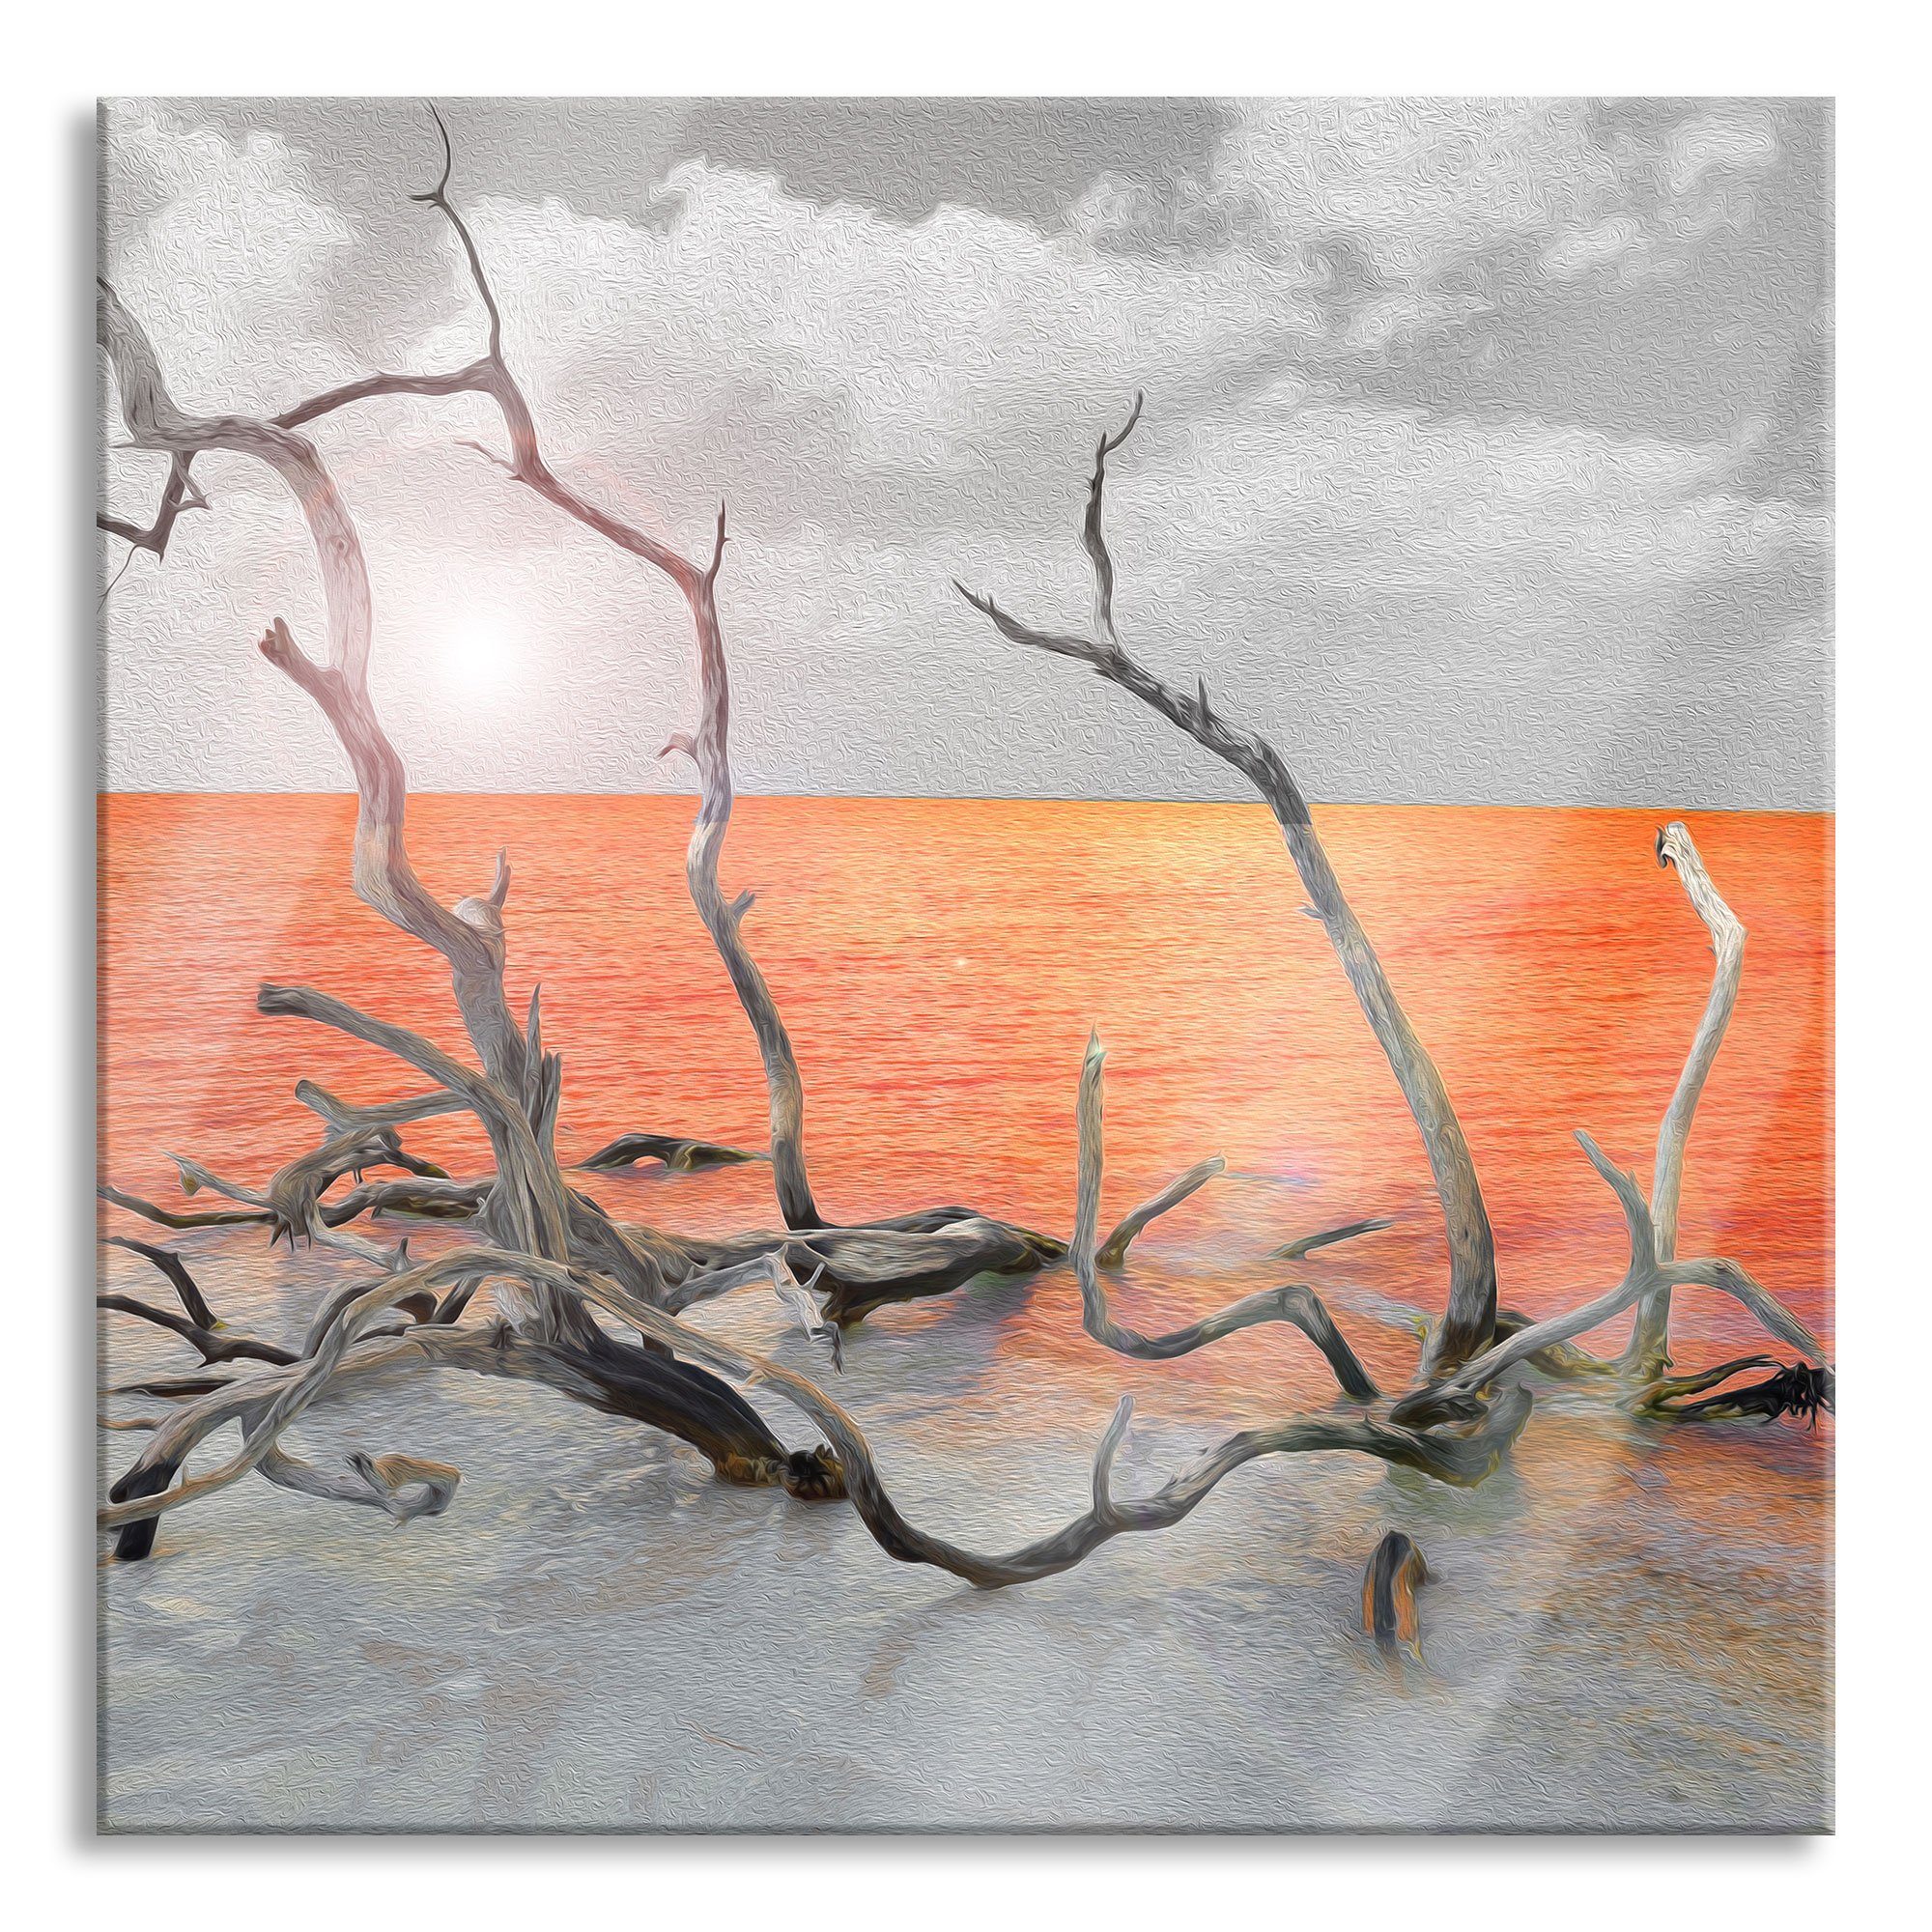 Pixxprint Glasbild Treibgut am Meer, Treibgut am Meer (1 St), Glasbild aus Echtglas, inkl. Aufhängungen und Abstandshalter